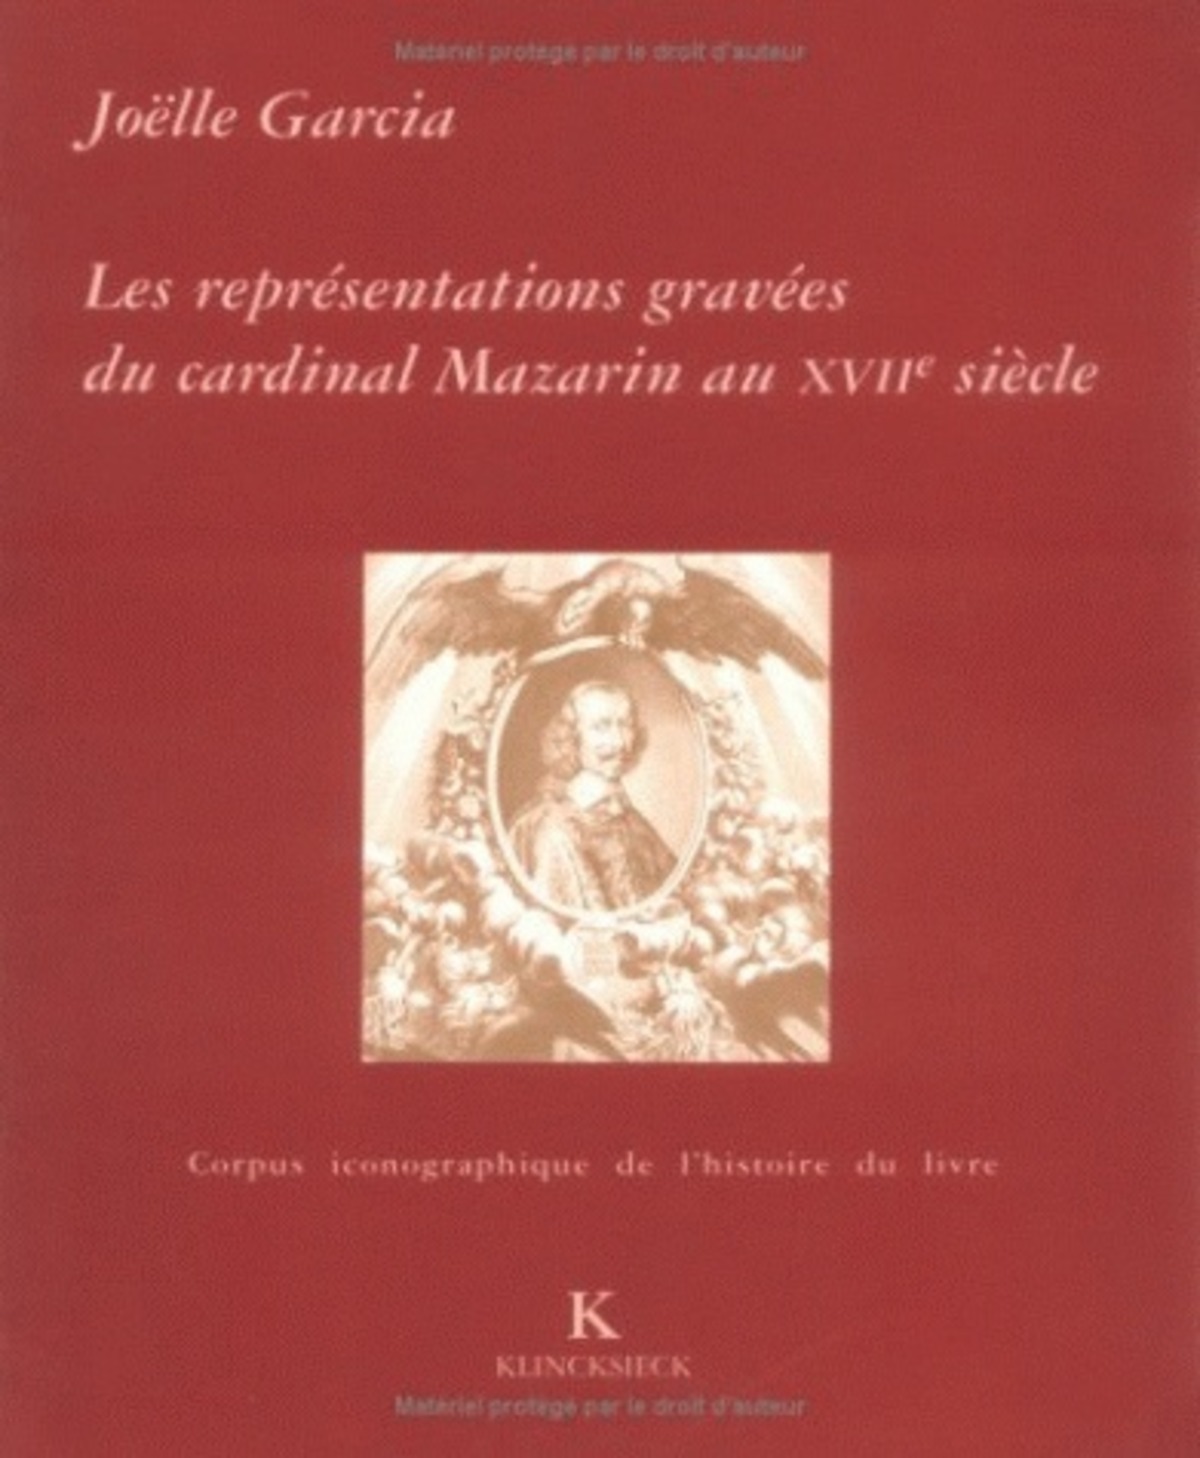 Les Représentations gravées du Cardinal Mazarin au XVIIe siècle